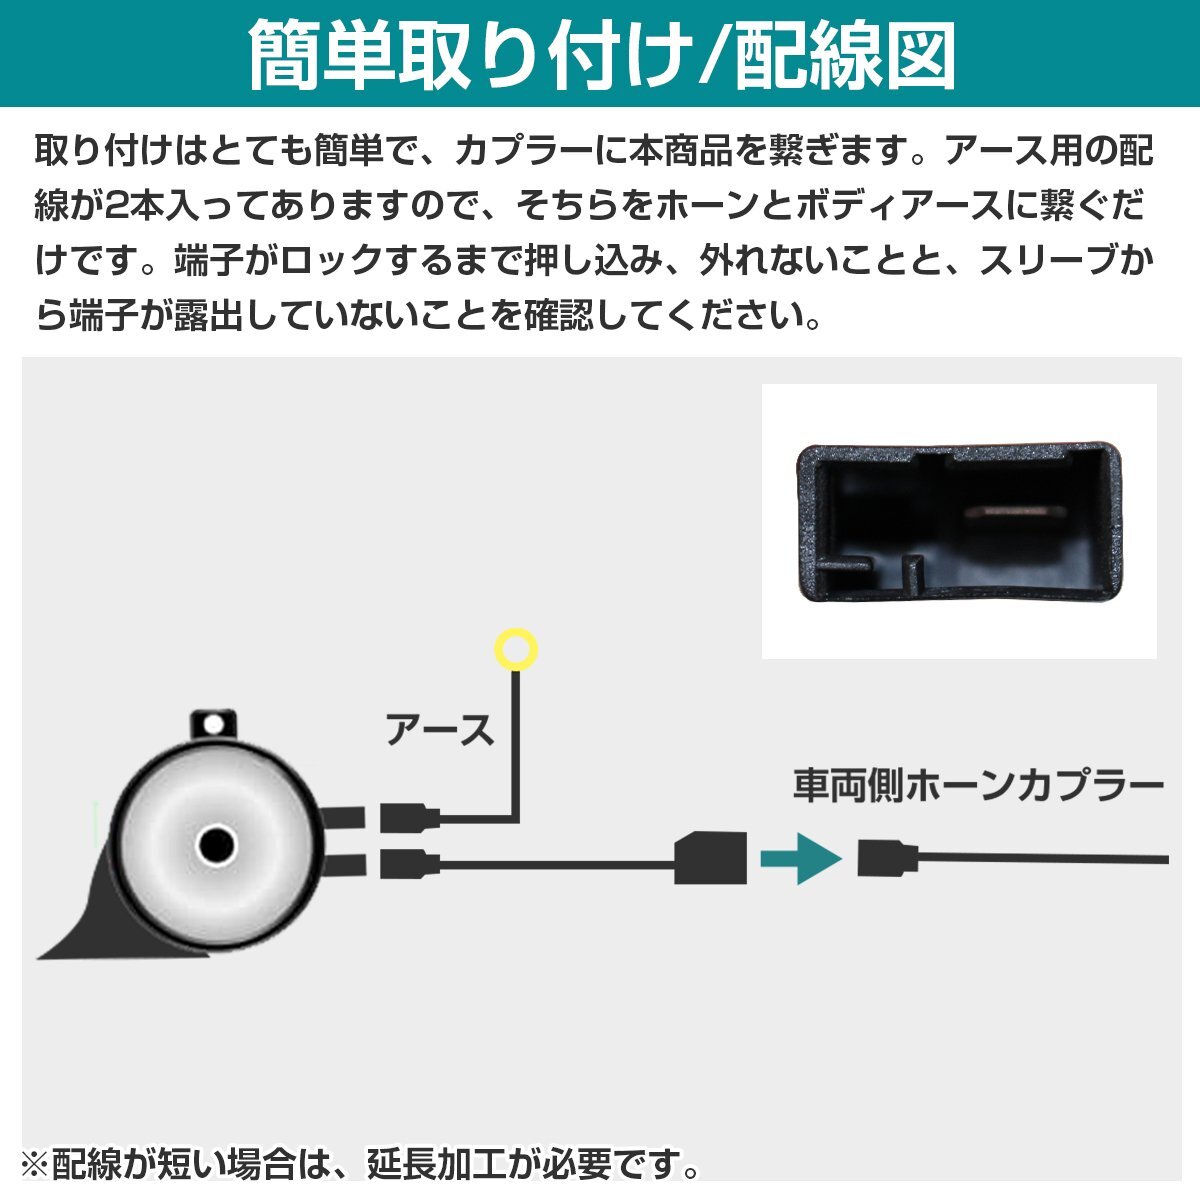 [ бесплатная доставка ] Toyota оригинальный электропроводка нет обработка неоригинальный сигнал замена Harness комплект для Toyota переходник из flat type терминал неоригинальный универсальный звуковой сигнал установка комплект 